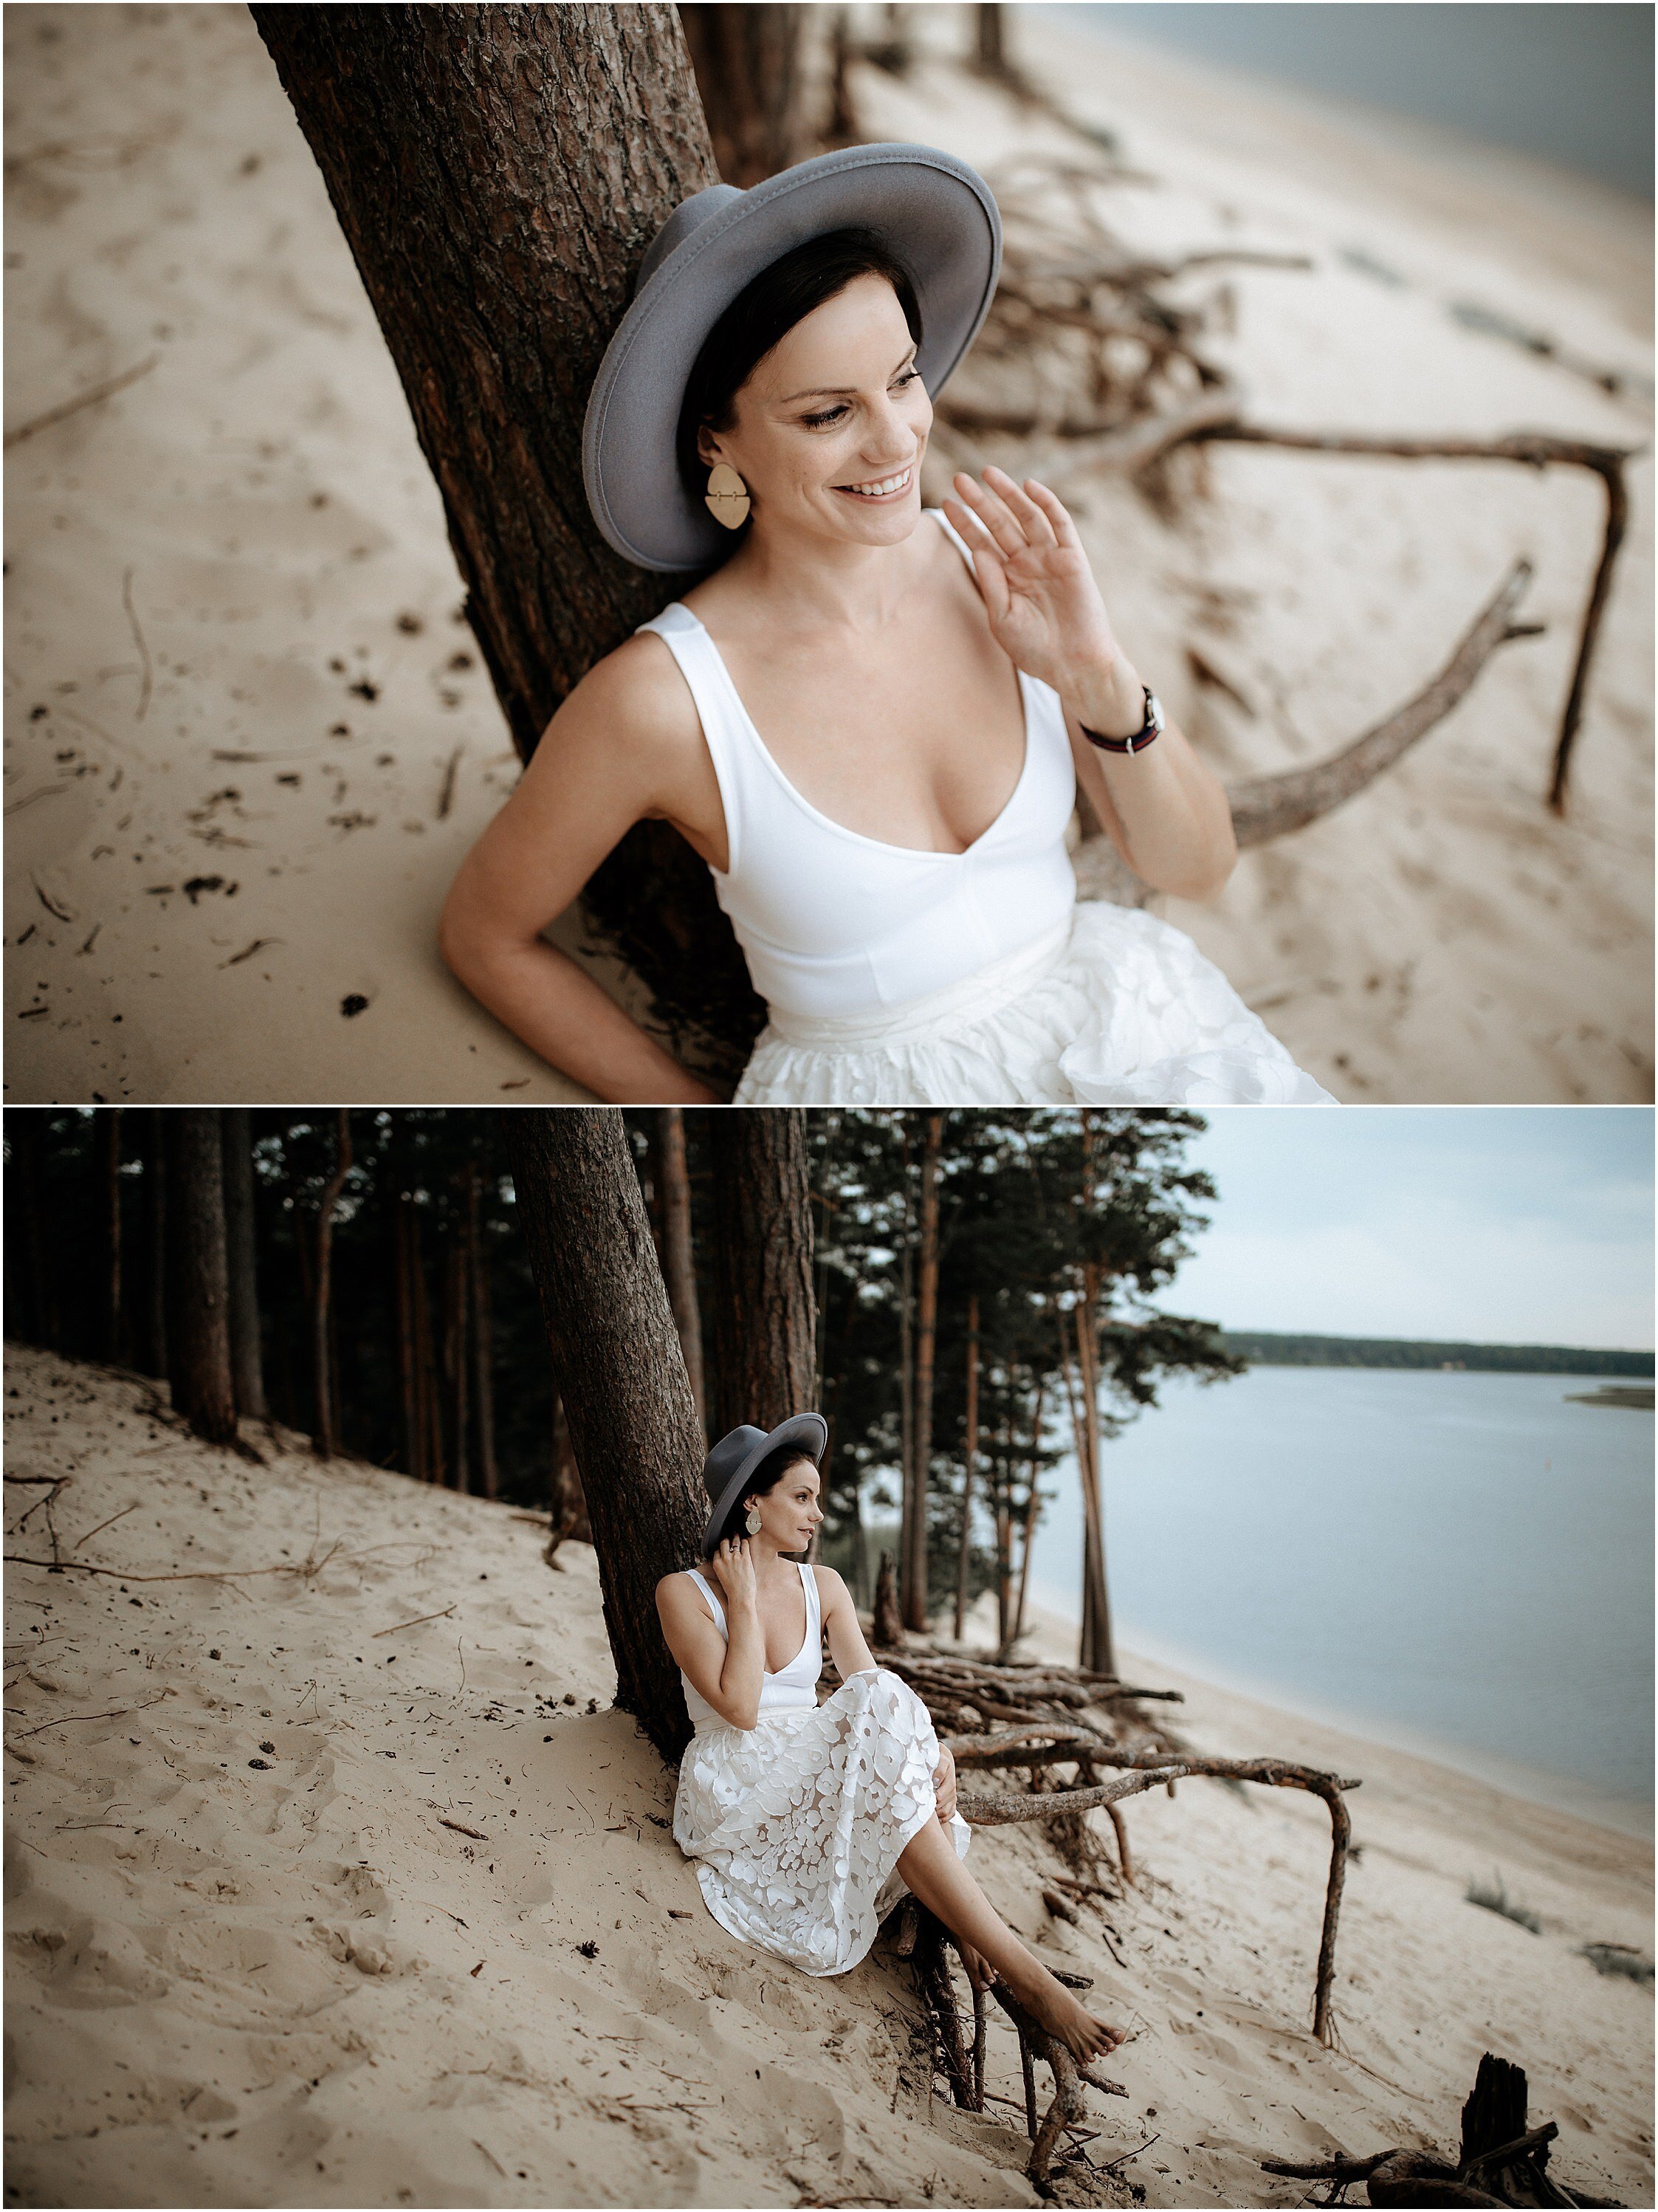 Zanda+Auckland+wedding+photographer+romantic+couple+portrait++white+sand+dunes+Europe+Latvia+New+Zealand_6.jpeg